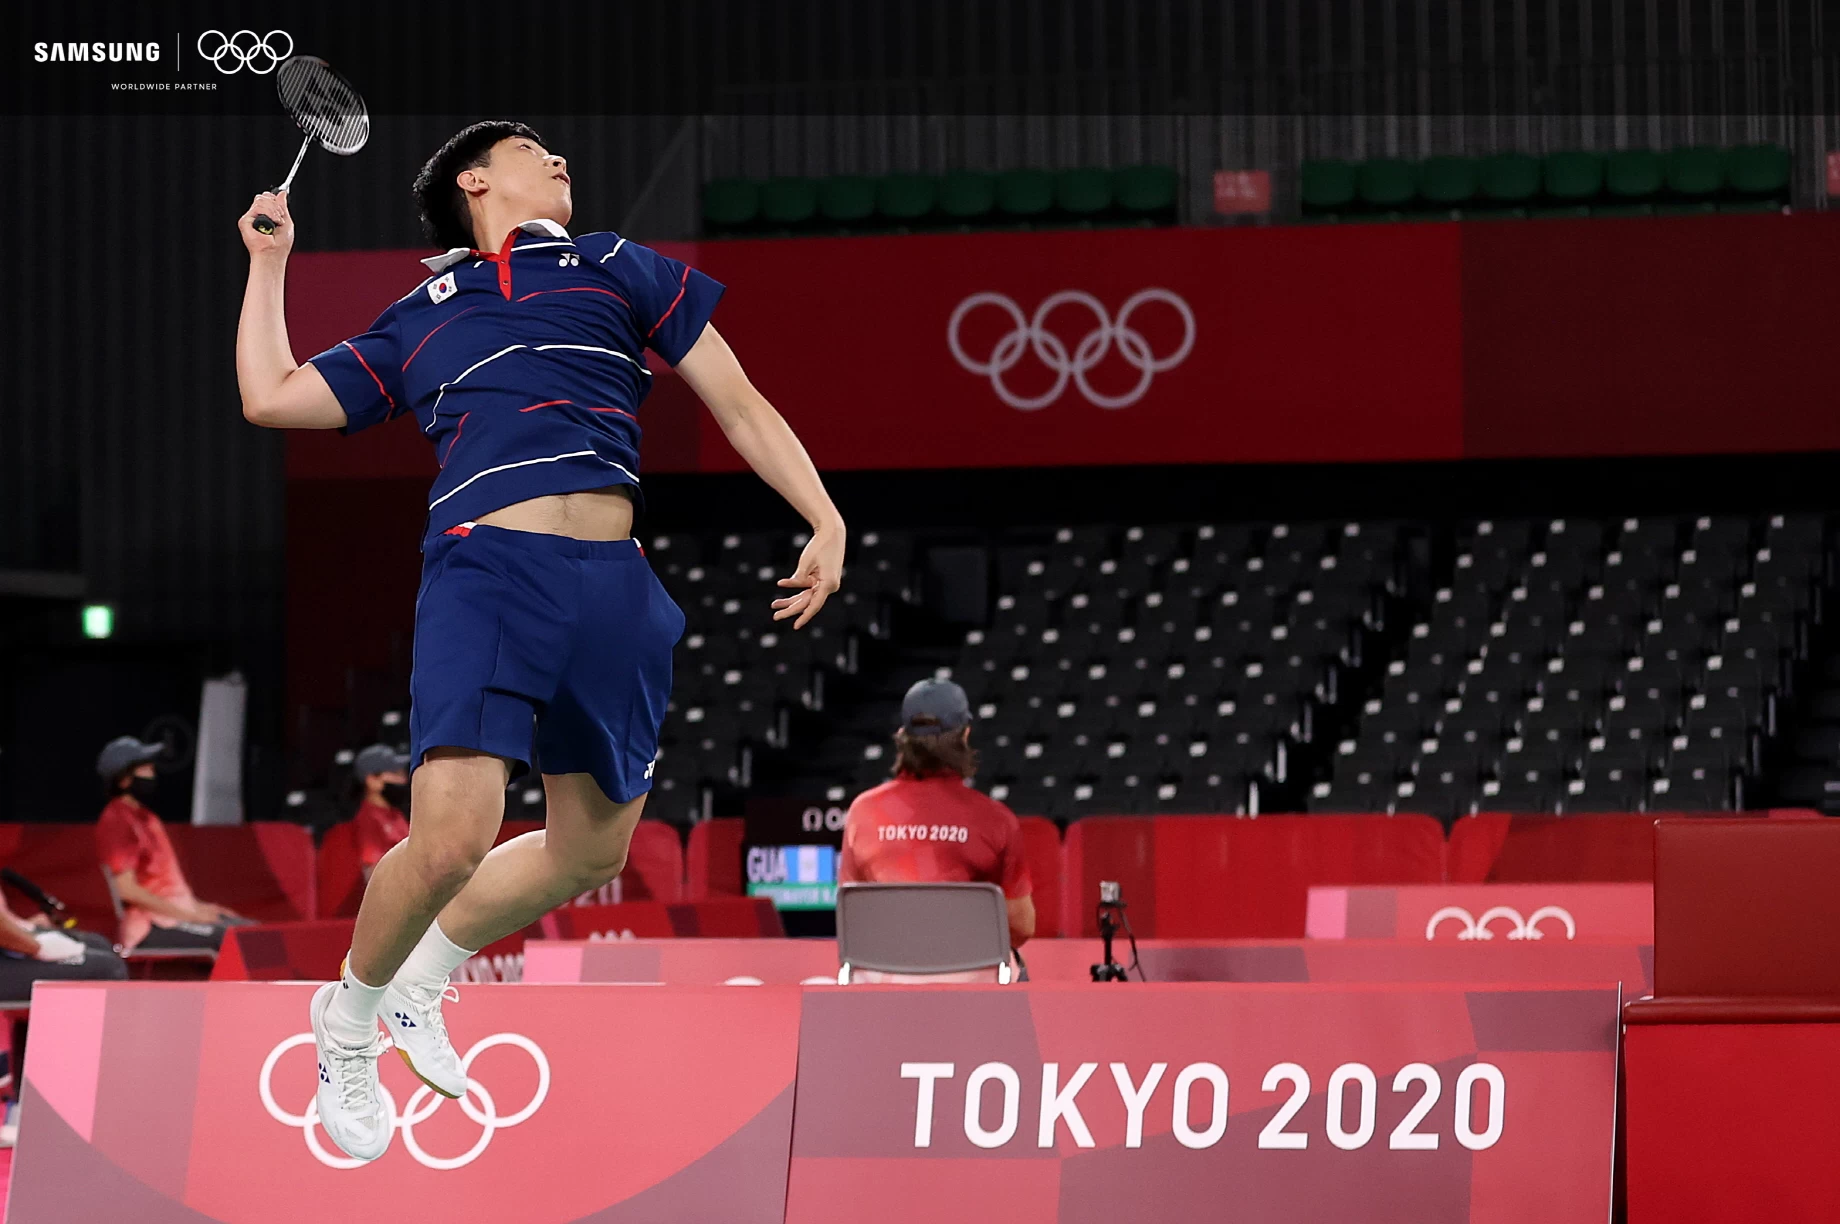 withGalaxy 1 | #withGalaxy | ชมภาพถ่ายส่งตรงจากโอลิมปิก โตเกียว 2020 จากกล้องสมาร์ทโฟน S21 Series 5G